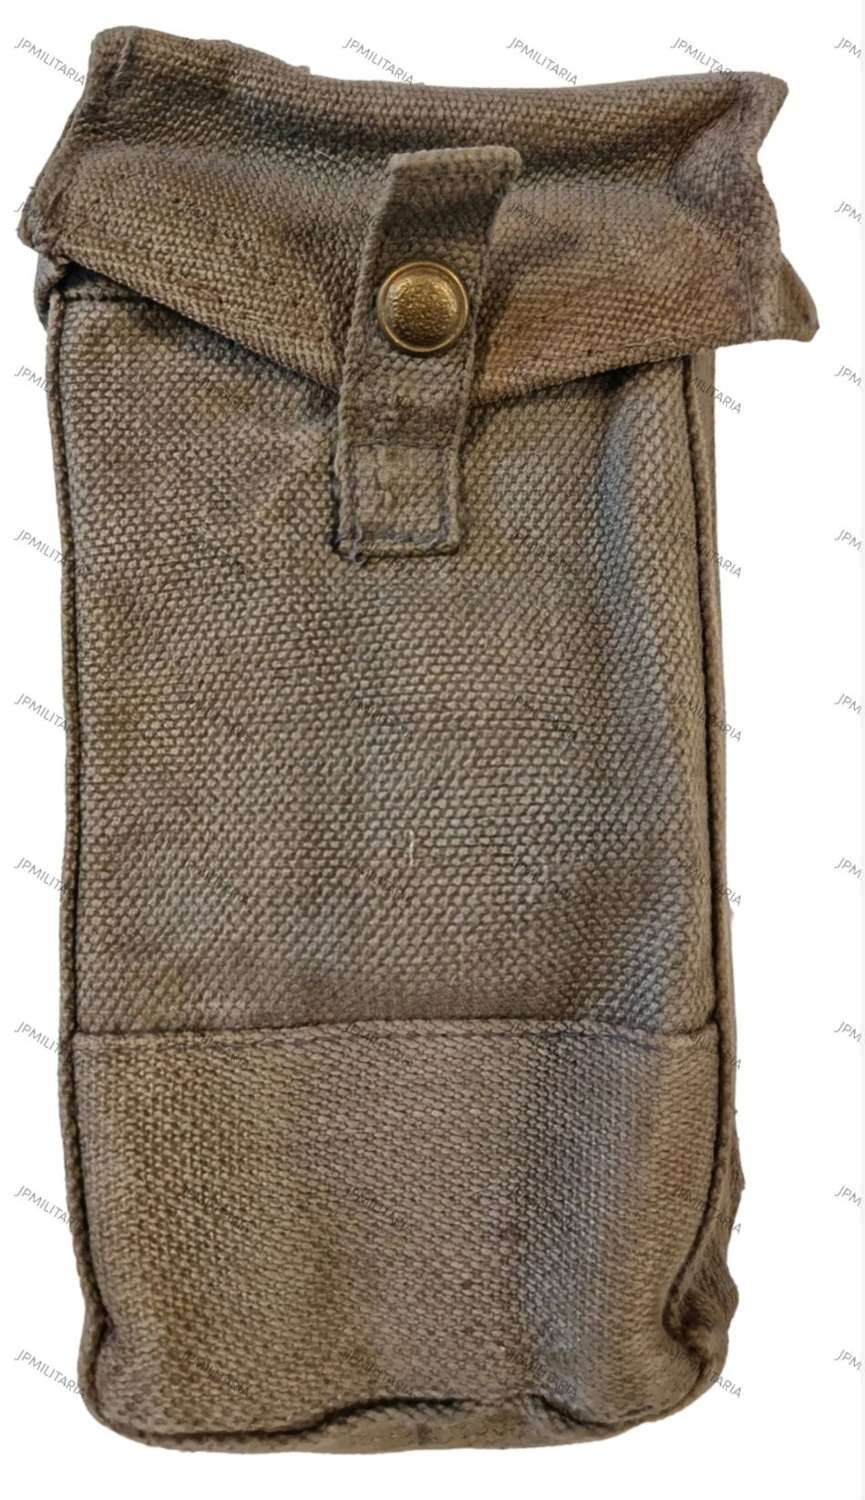 British 1937 pattern bren pouch RAF